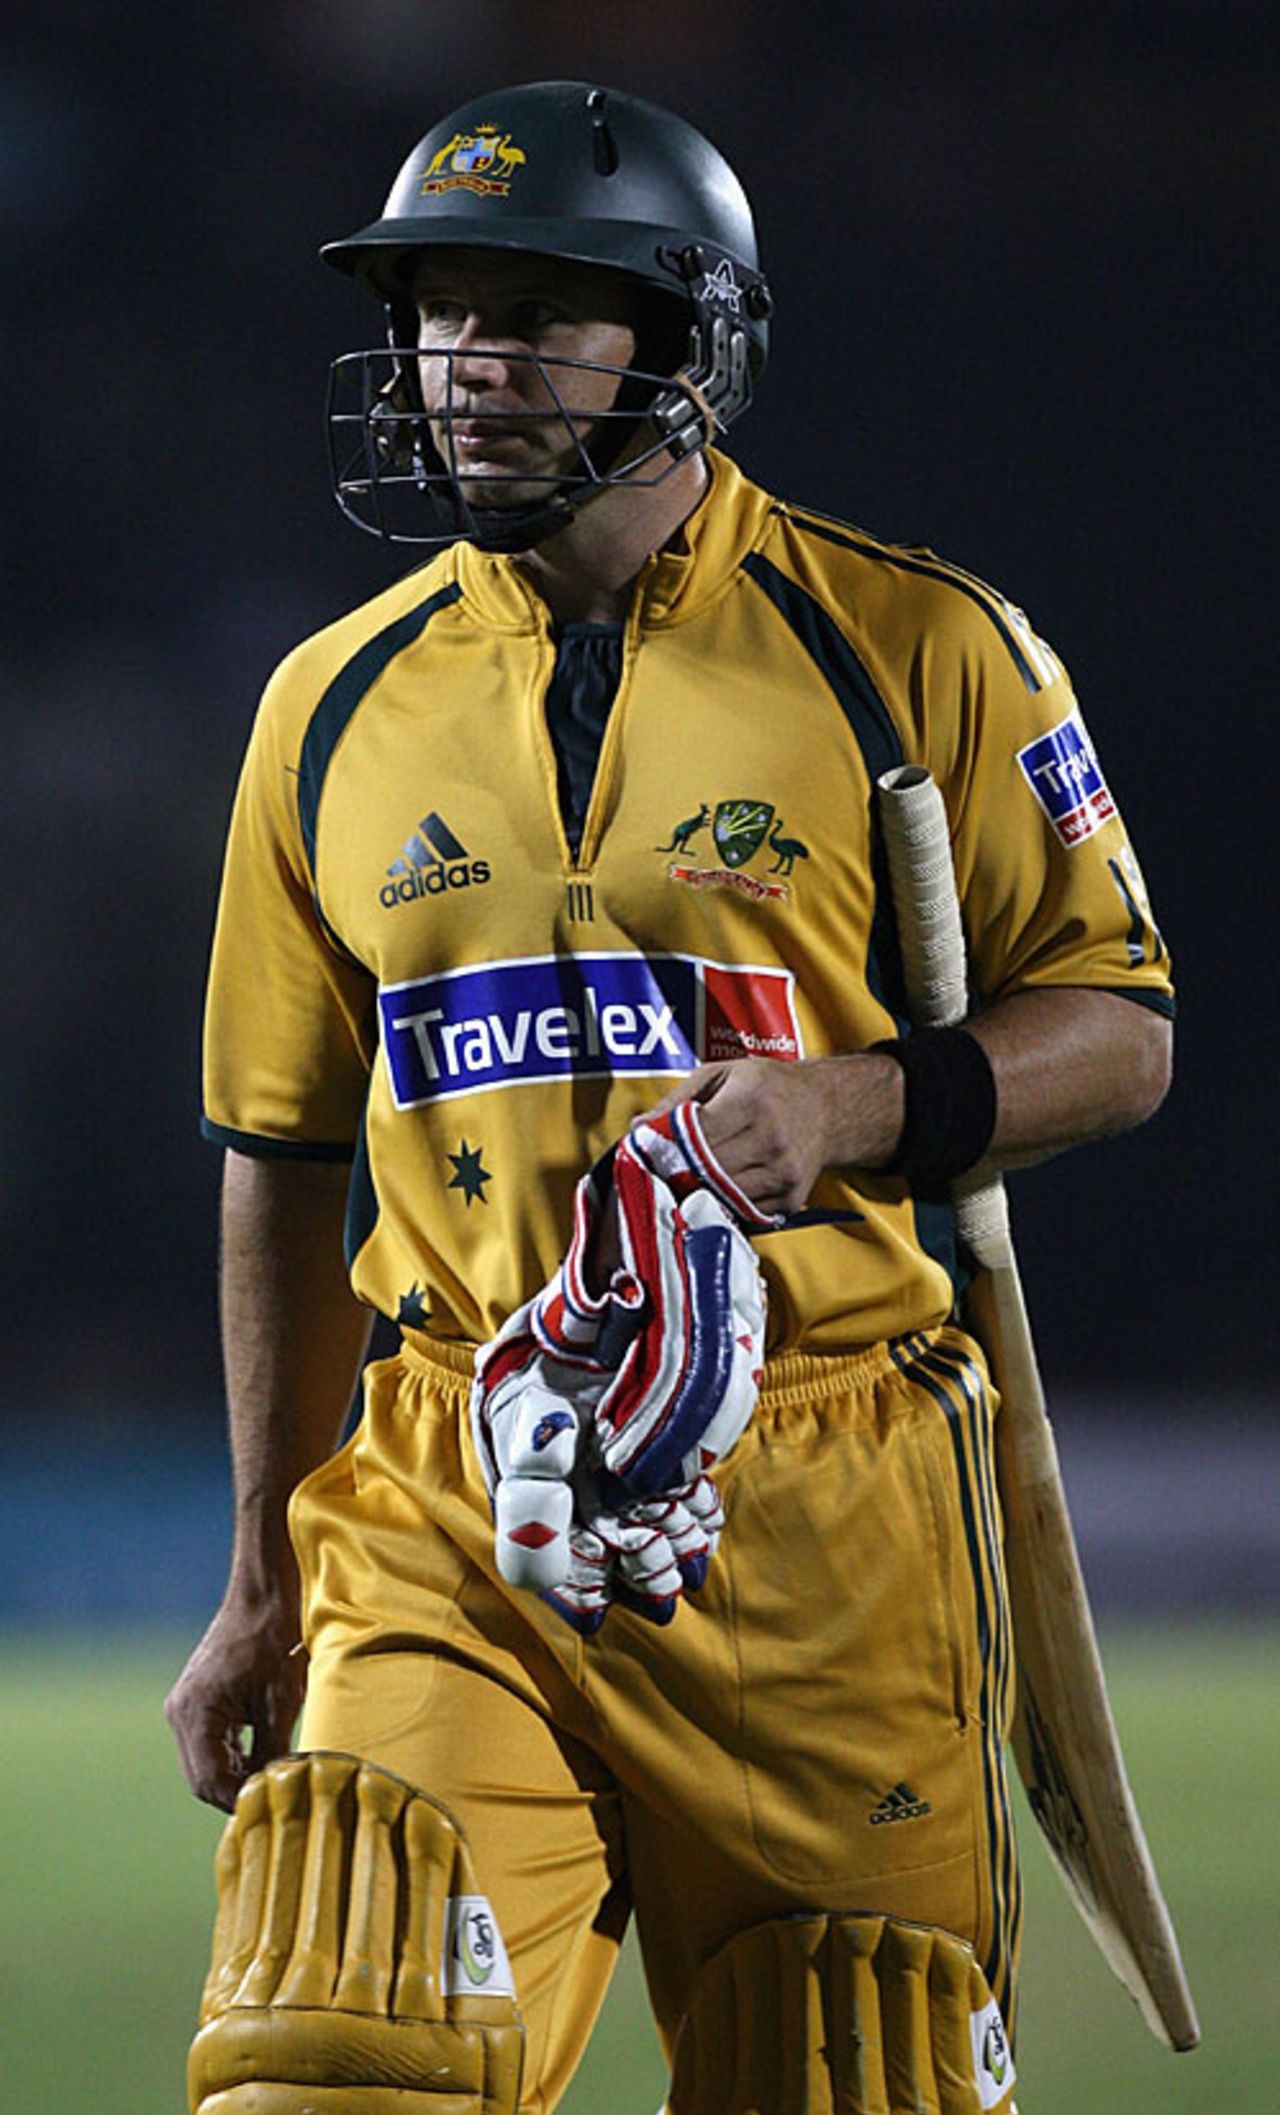 Brad Hodge walks back to the dug-out, India v Australia, Twenty20 international, Mumbai, October 20, 2007